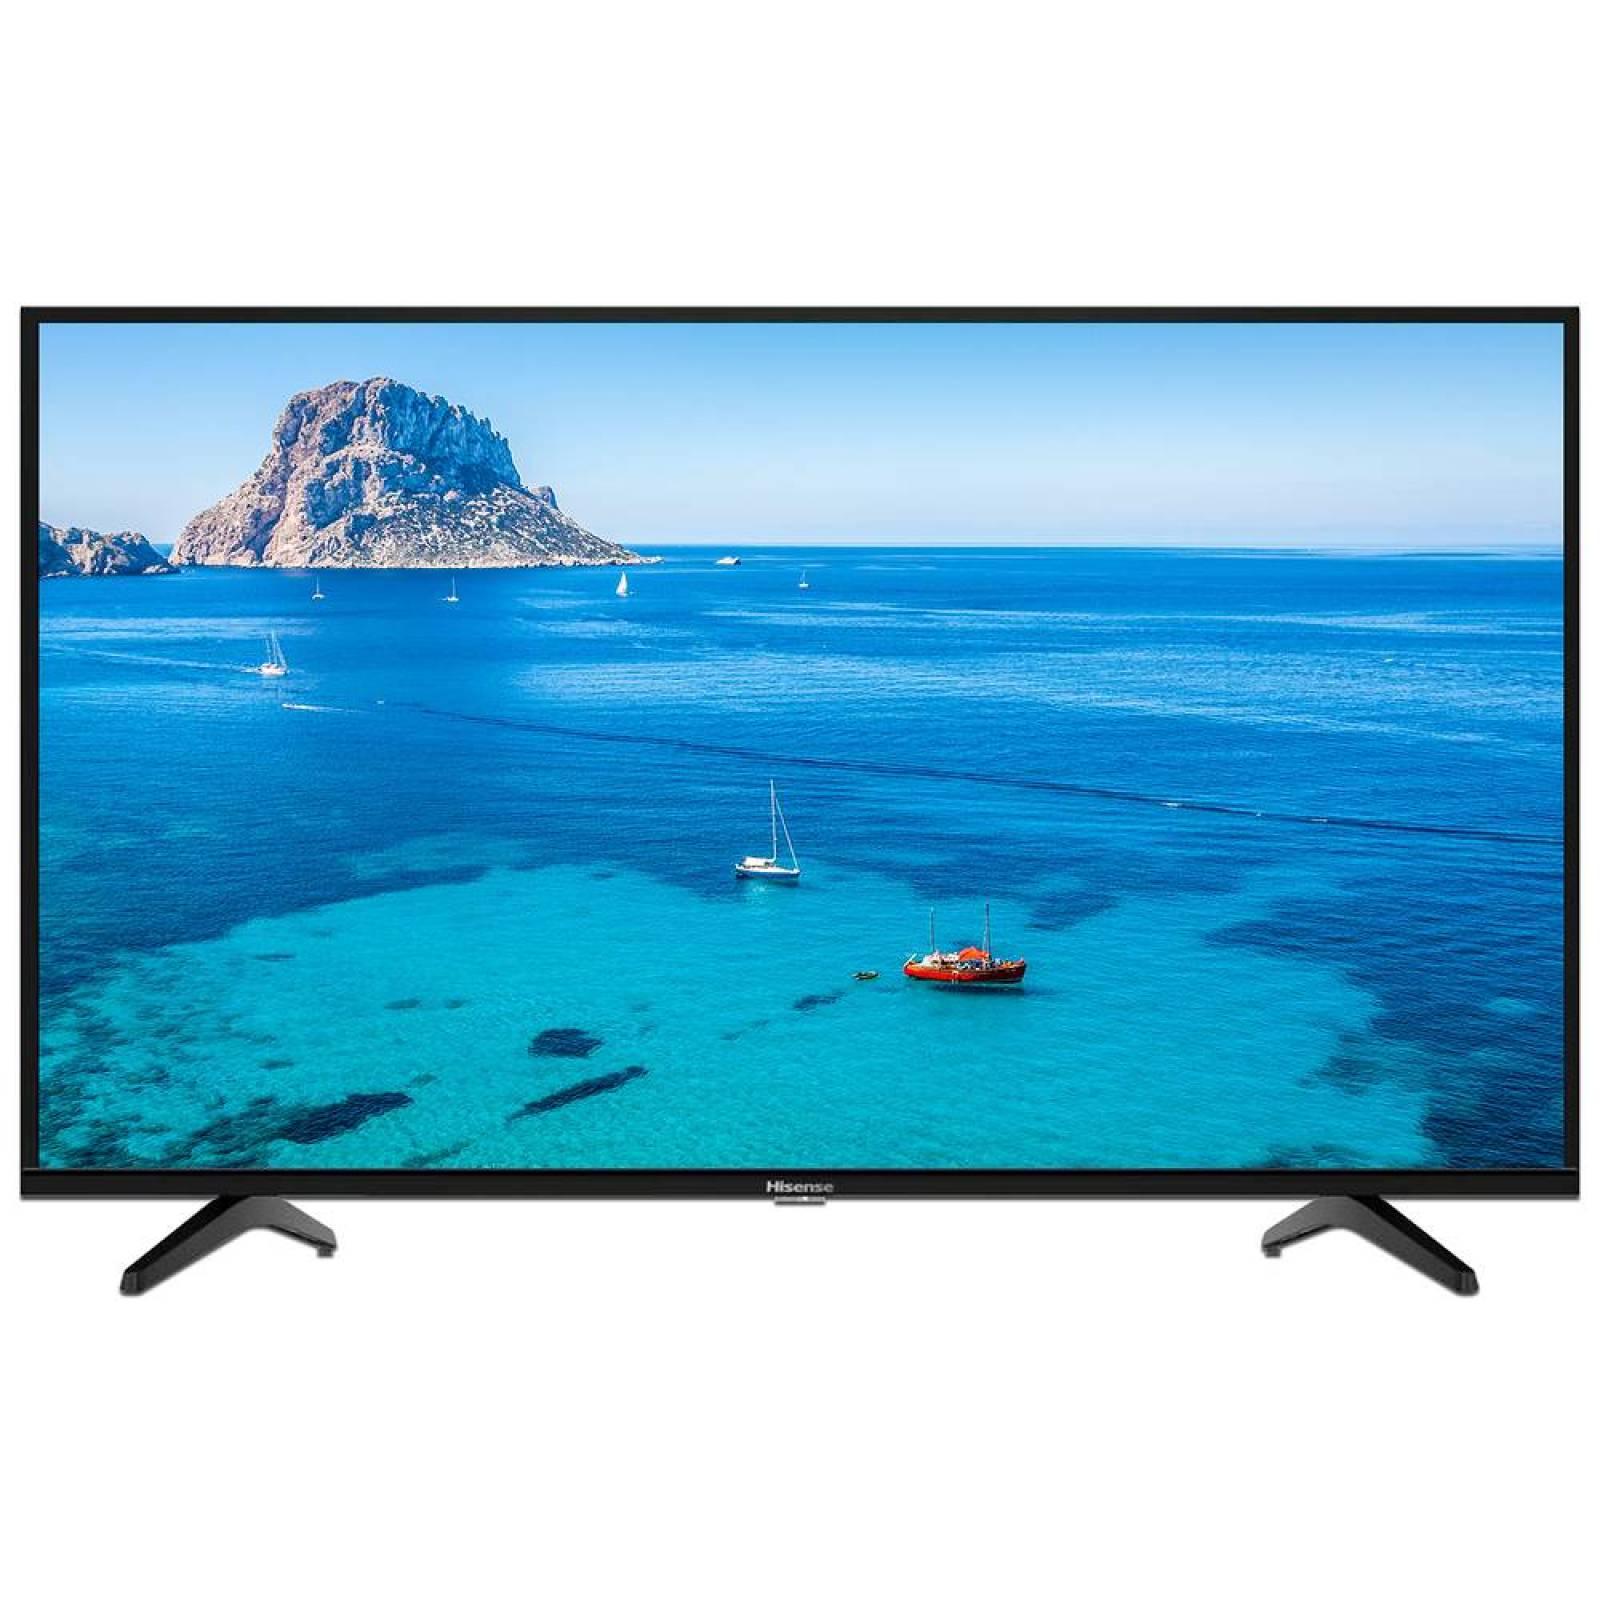 TelevisiÃ³n Hisense LED Smart TV de 32", ResoluciÃ³n 1360 x 768, con Roku TV.